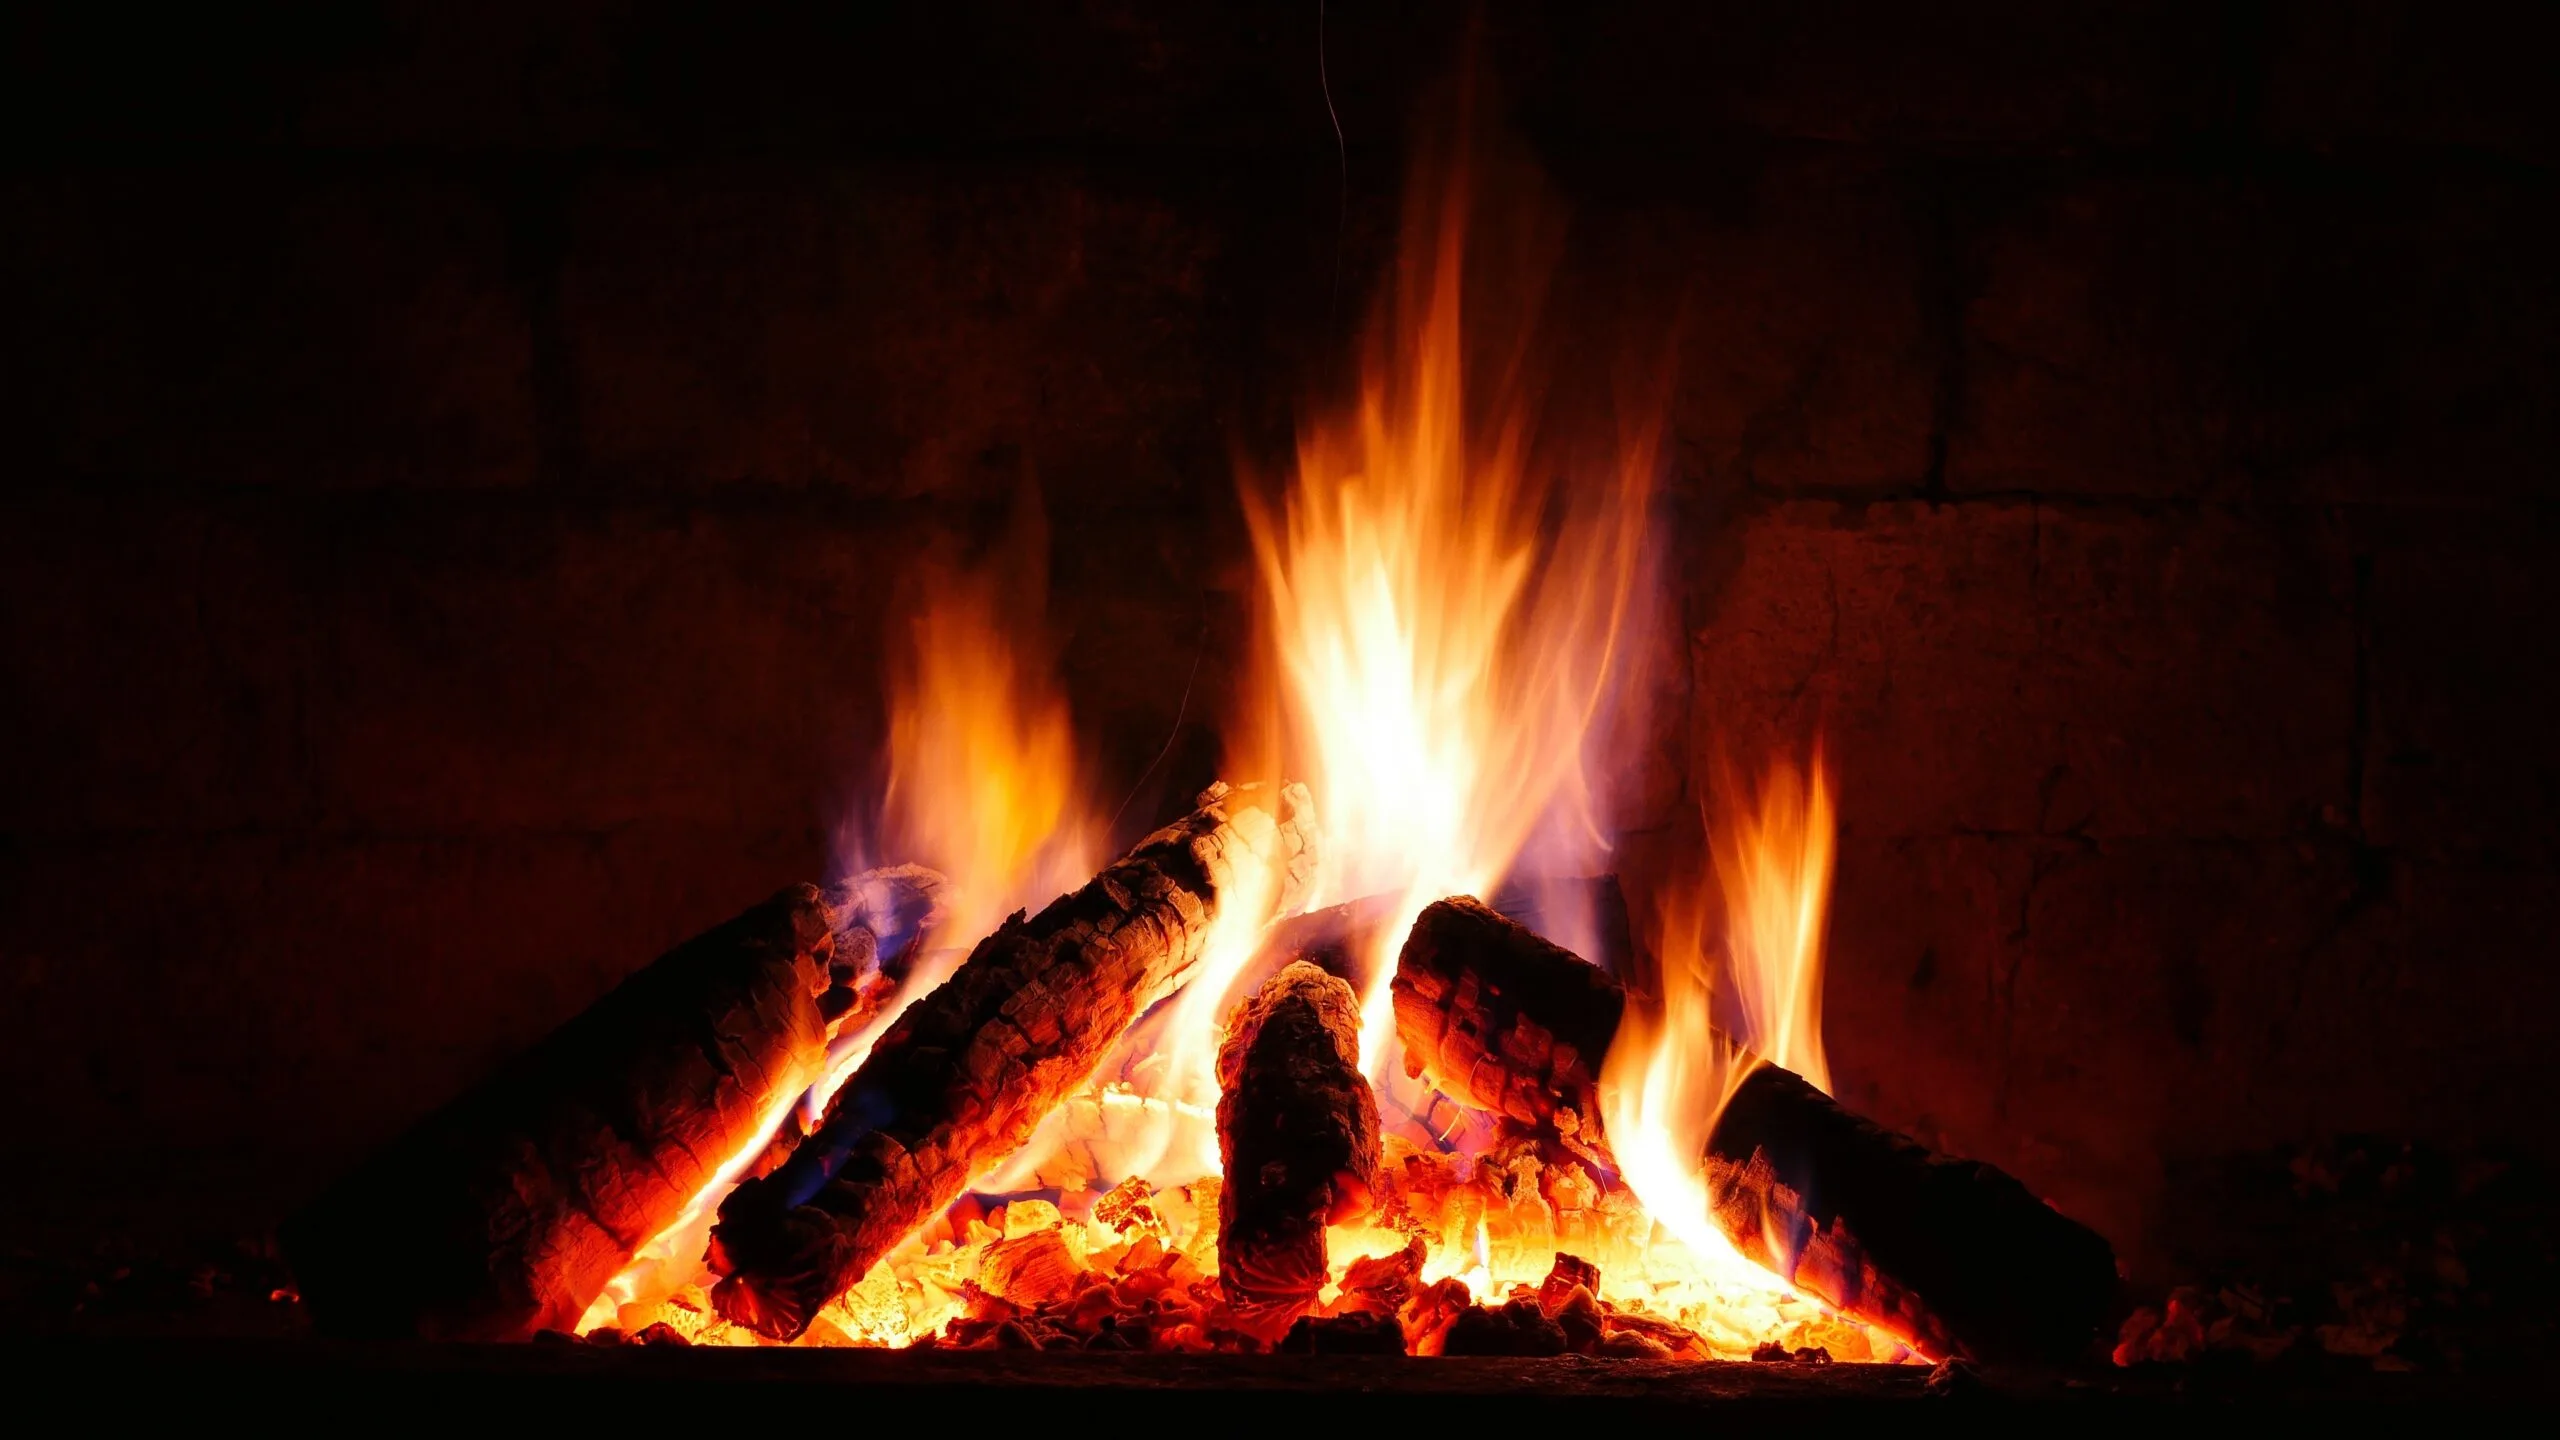 Burning Firewood at night